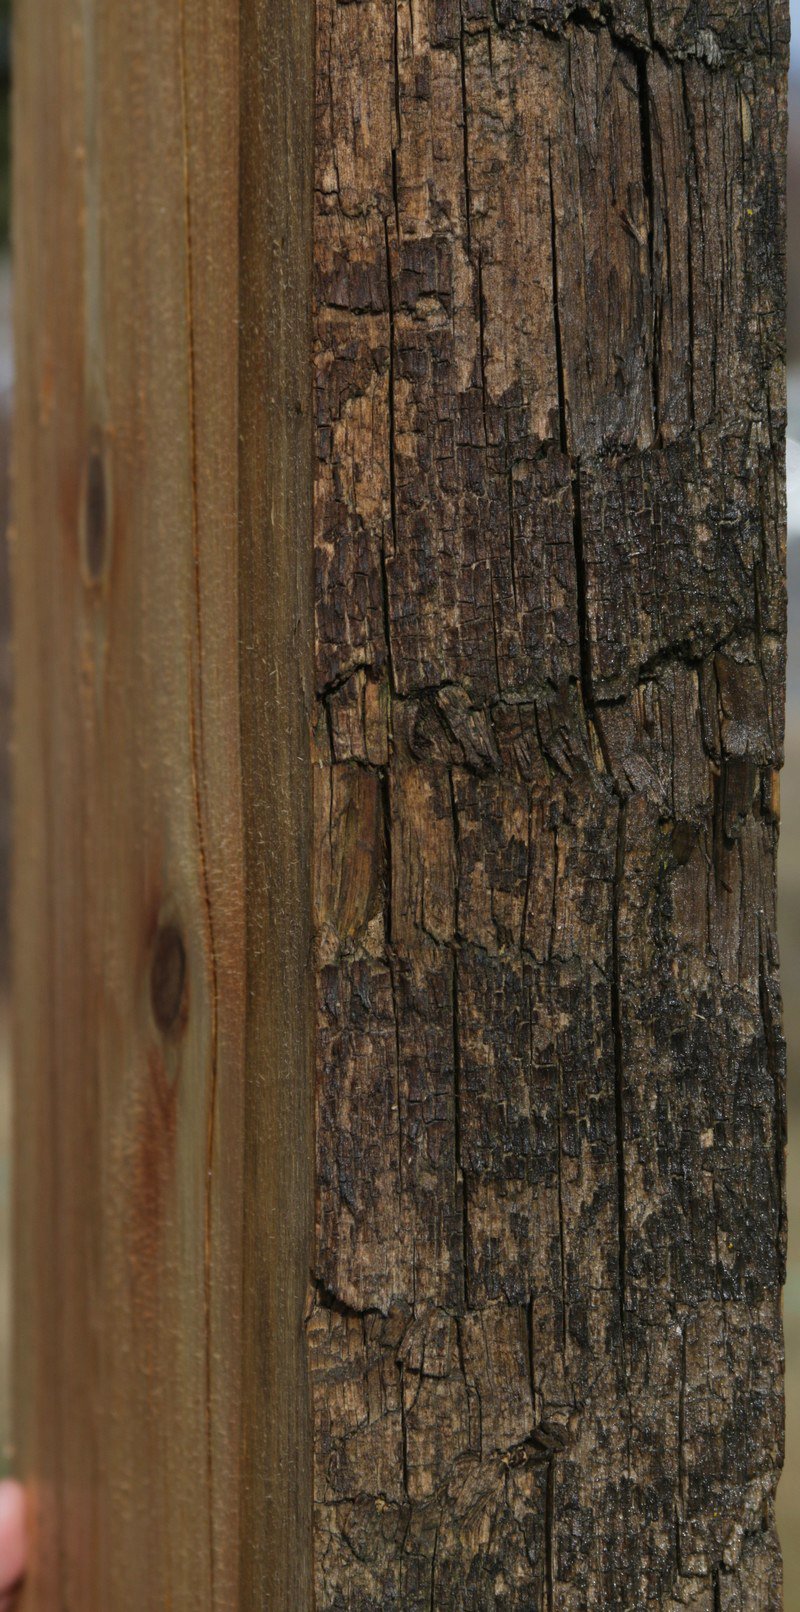 Natural Rustic Red Cedar Mantel